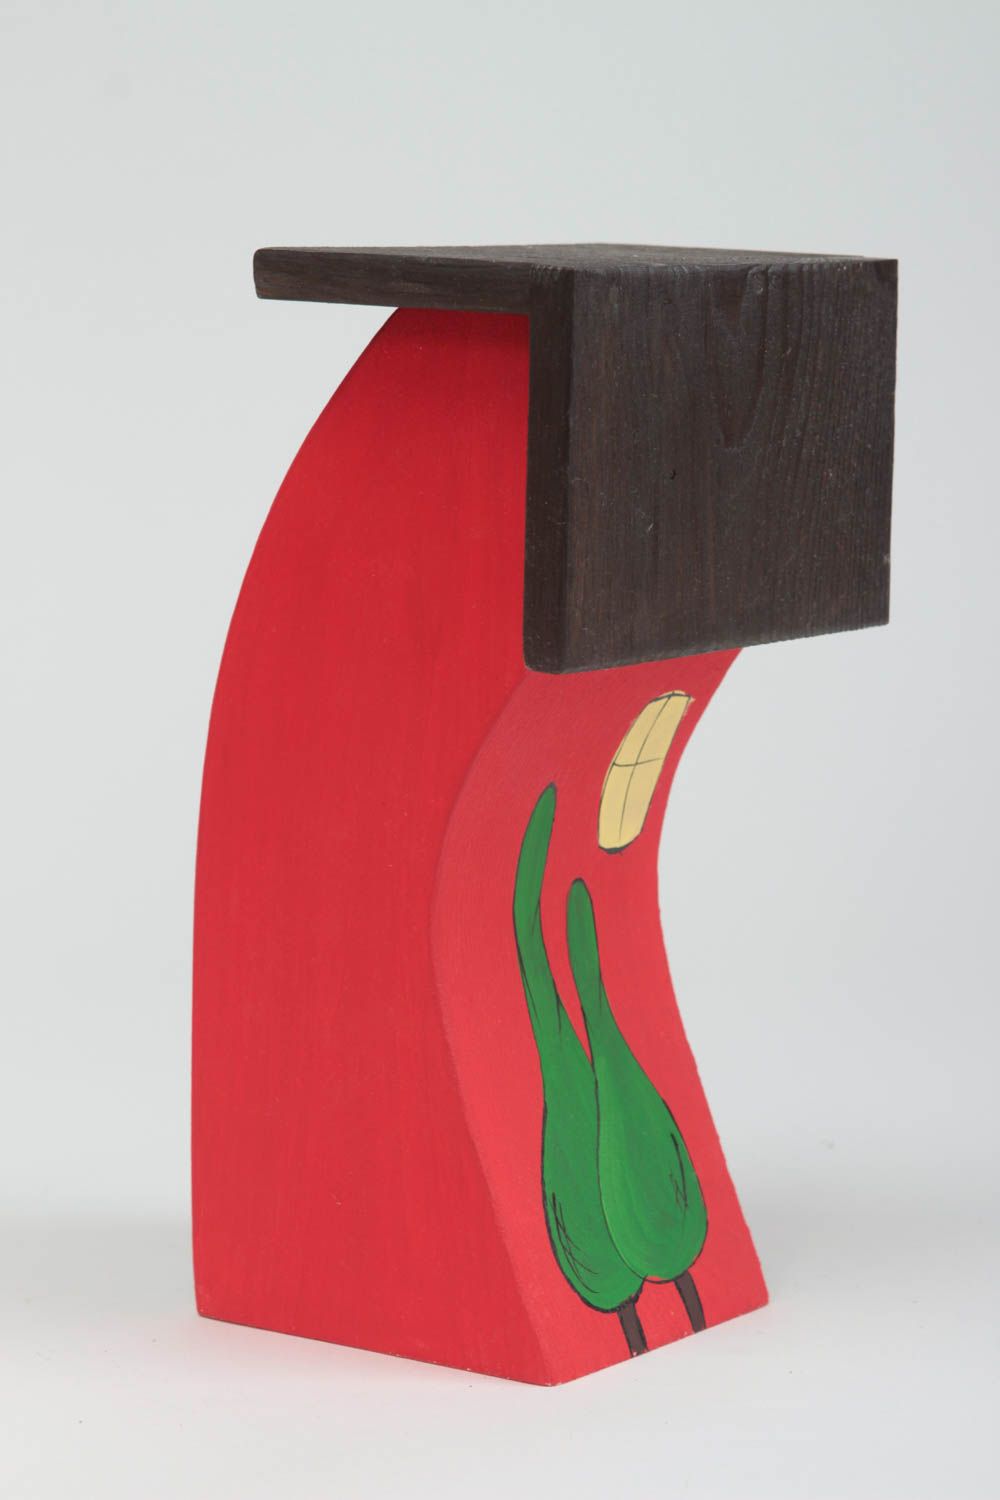 Фигурка из дерева домик высокий яркий красный с окошками красивый ручной работы фото 3